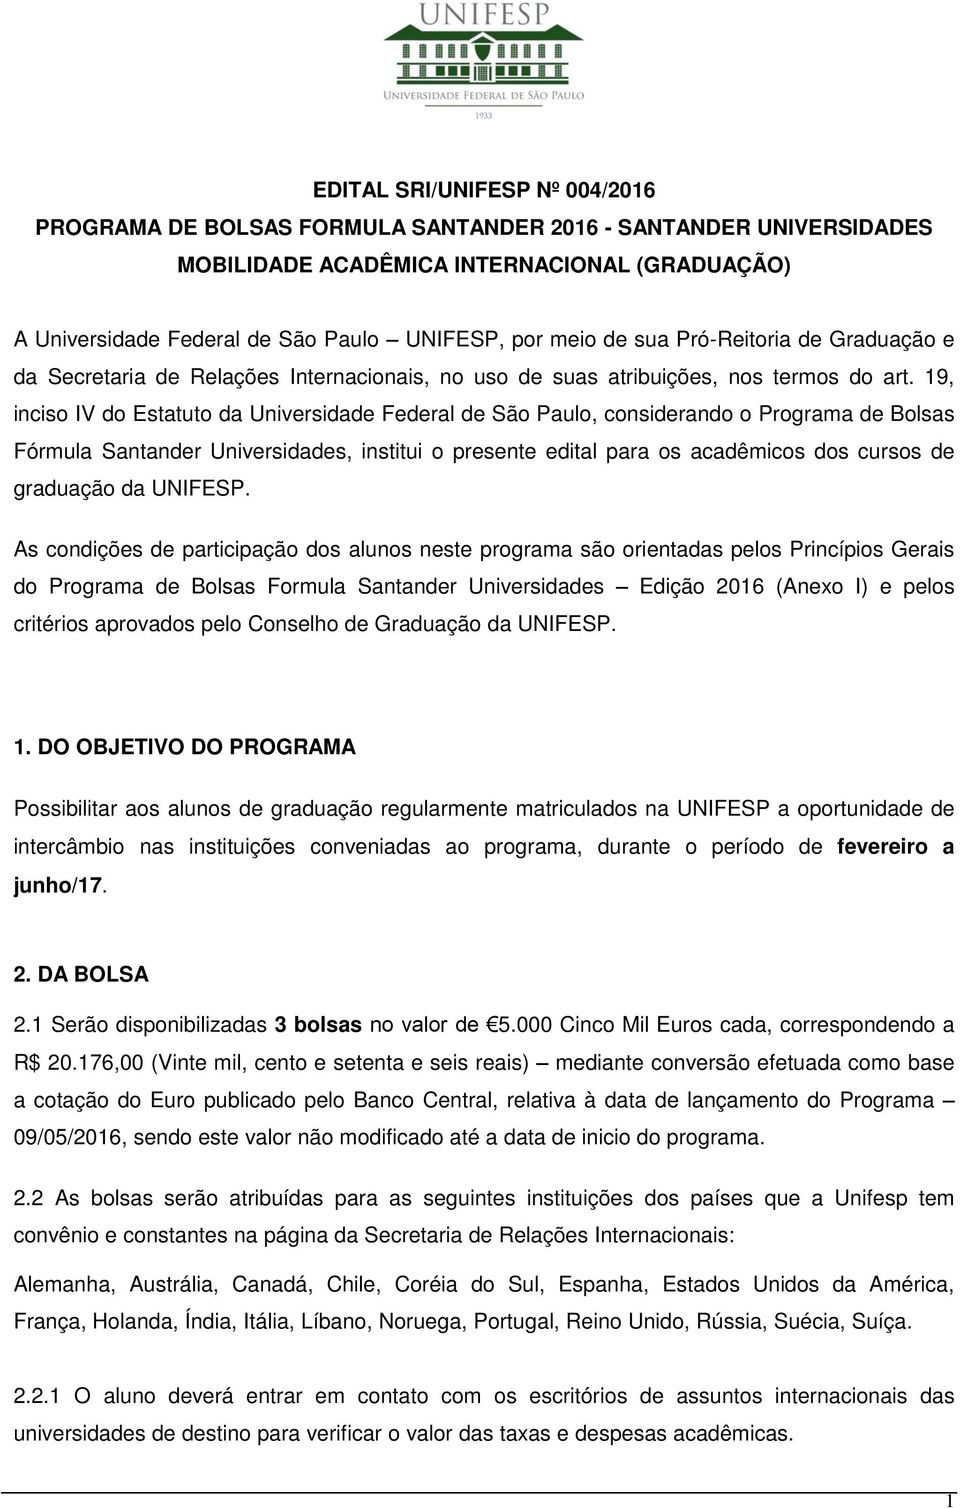 19, inciso IV do Estatuto da Universidade Federal de São Paulo, considerando o Programa de Bolsas Fórmula Santander Universidades, institui o presente edital para os acadêmicos dos cursos de